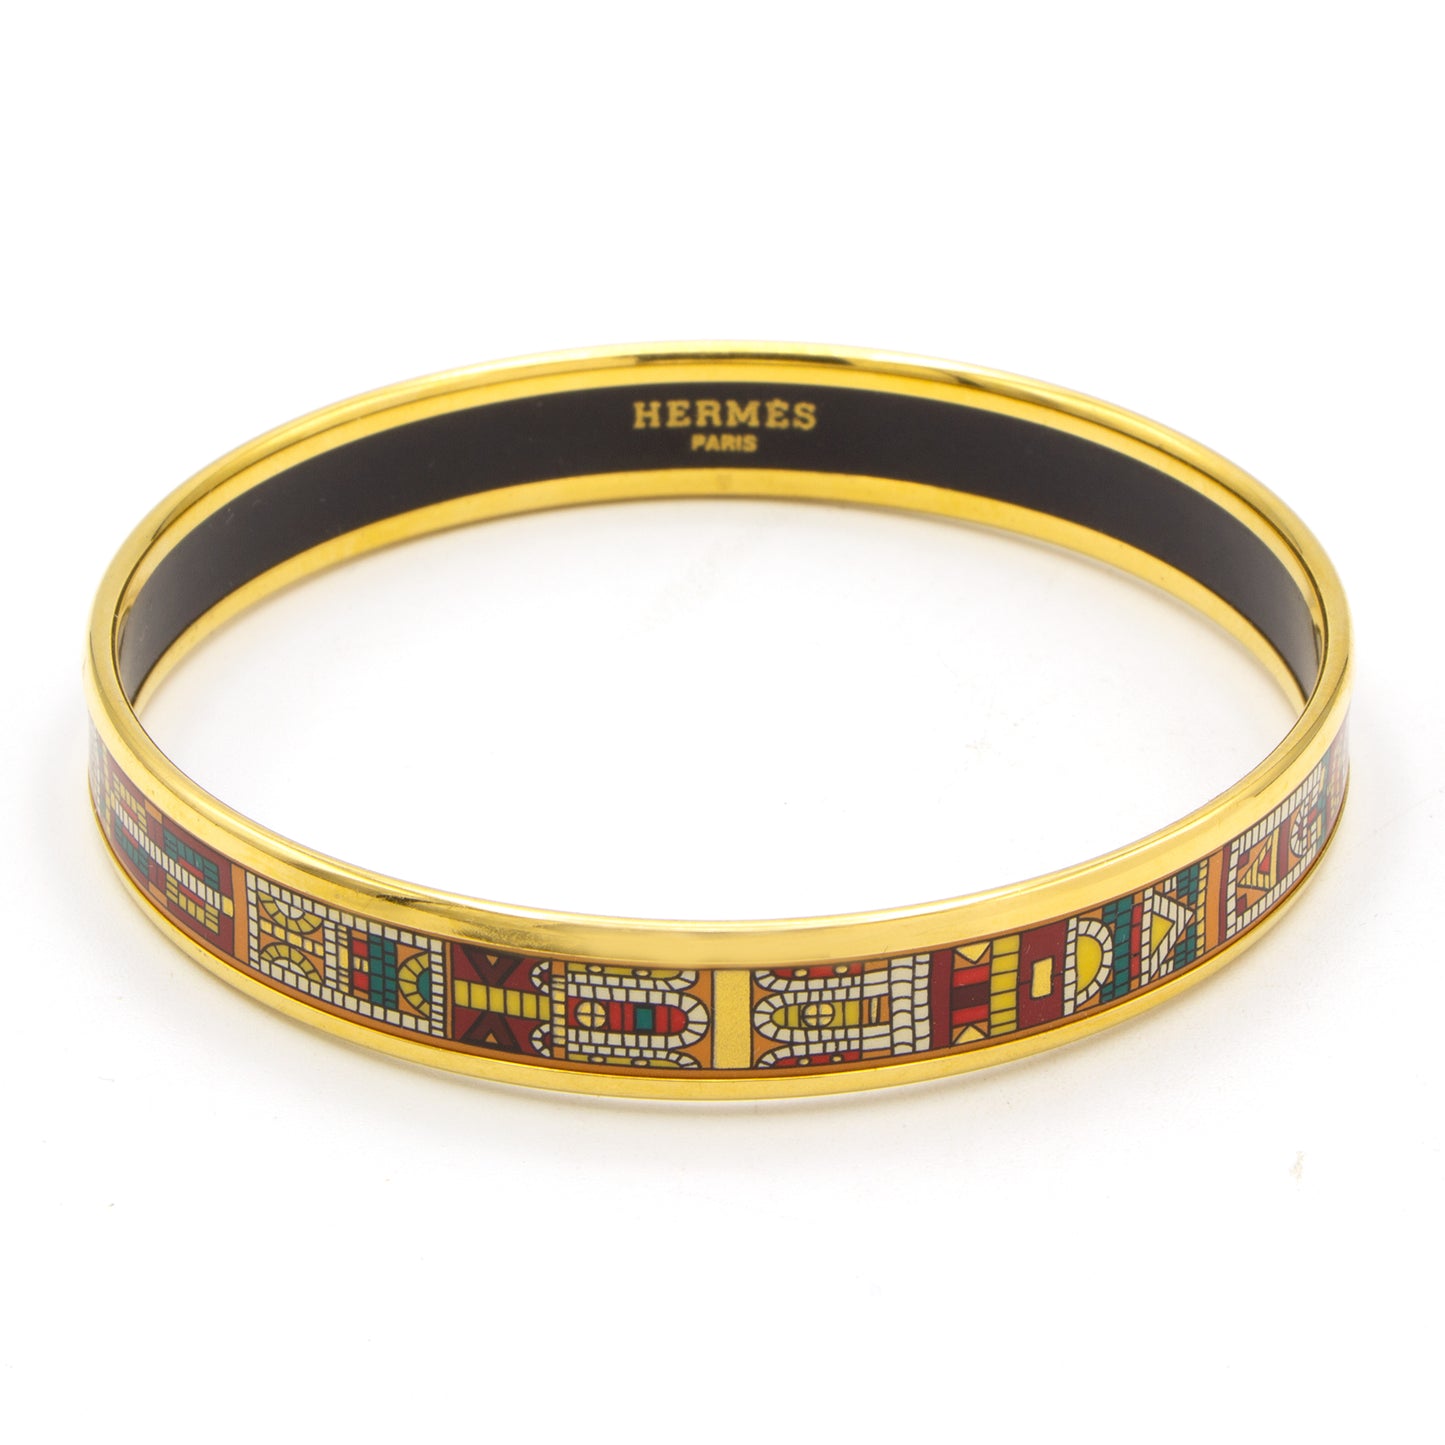 Hermès enamel bracelet mosaïque